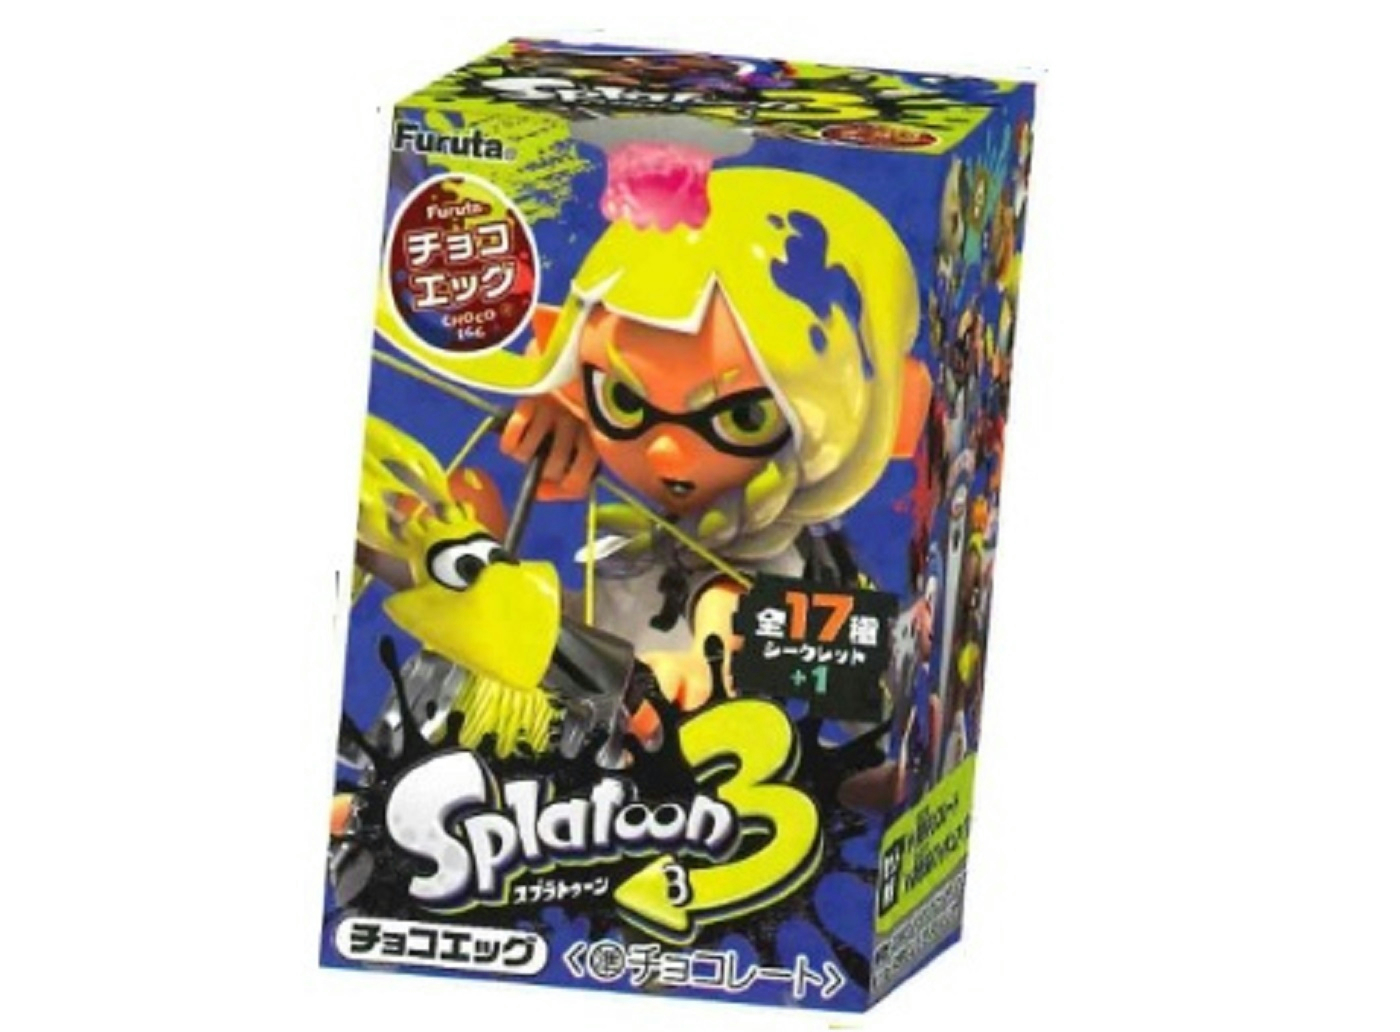 【食玩】Splatoon3『チョコエッグ スプラトゥーン3』10個入りBOX-003